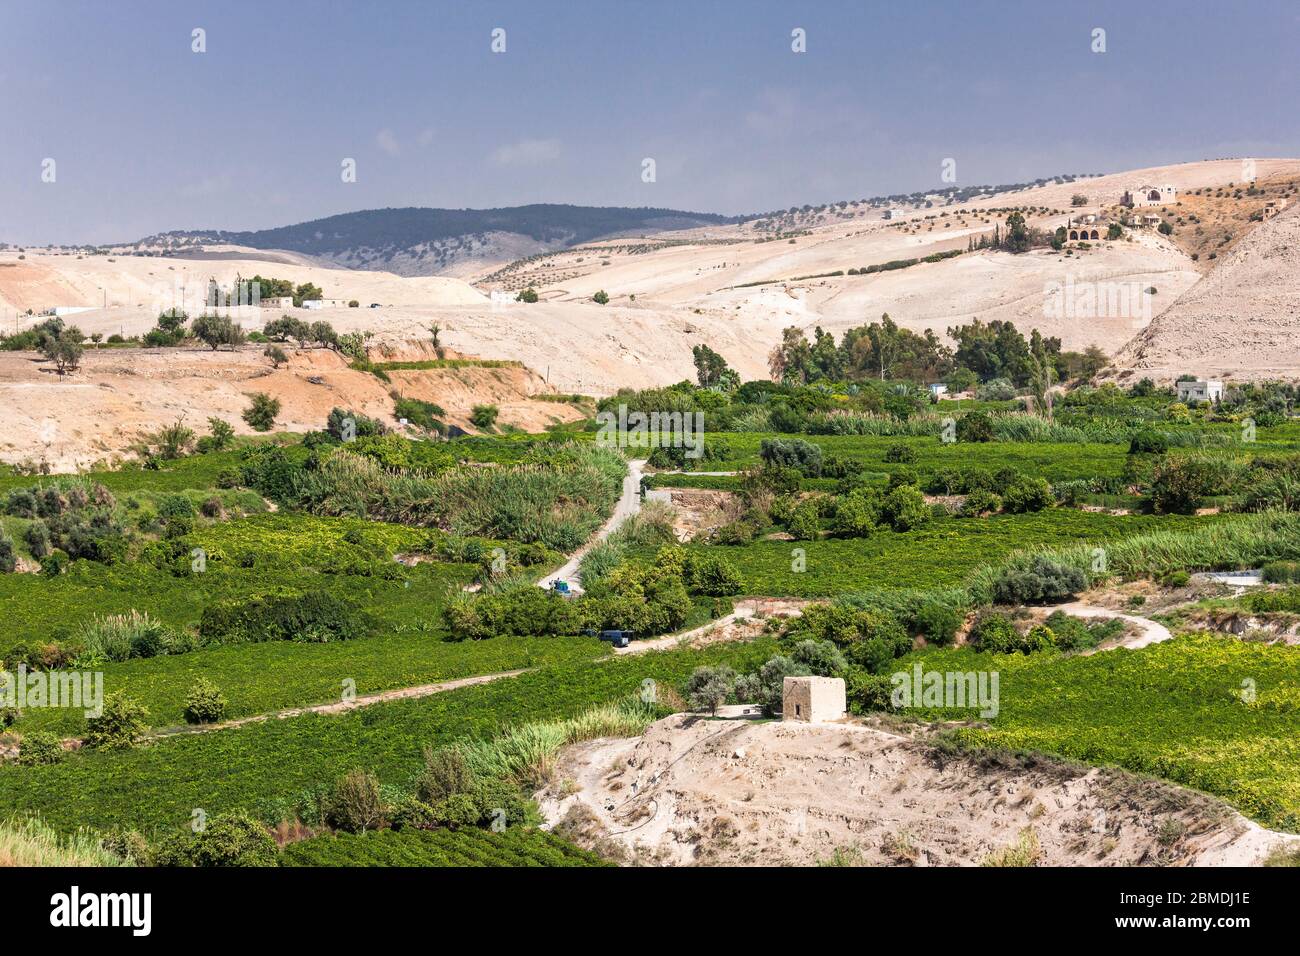 Granja agrícola cerca de las ruinas de Pella, valle de Jordania, Tabqet Fahel, Tabaqat Fahl, Irbit, Gobernación de Irbid, Jordania, Oriente Medio, Asia Foto de stock